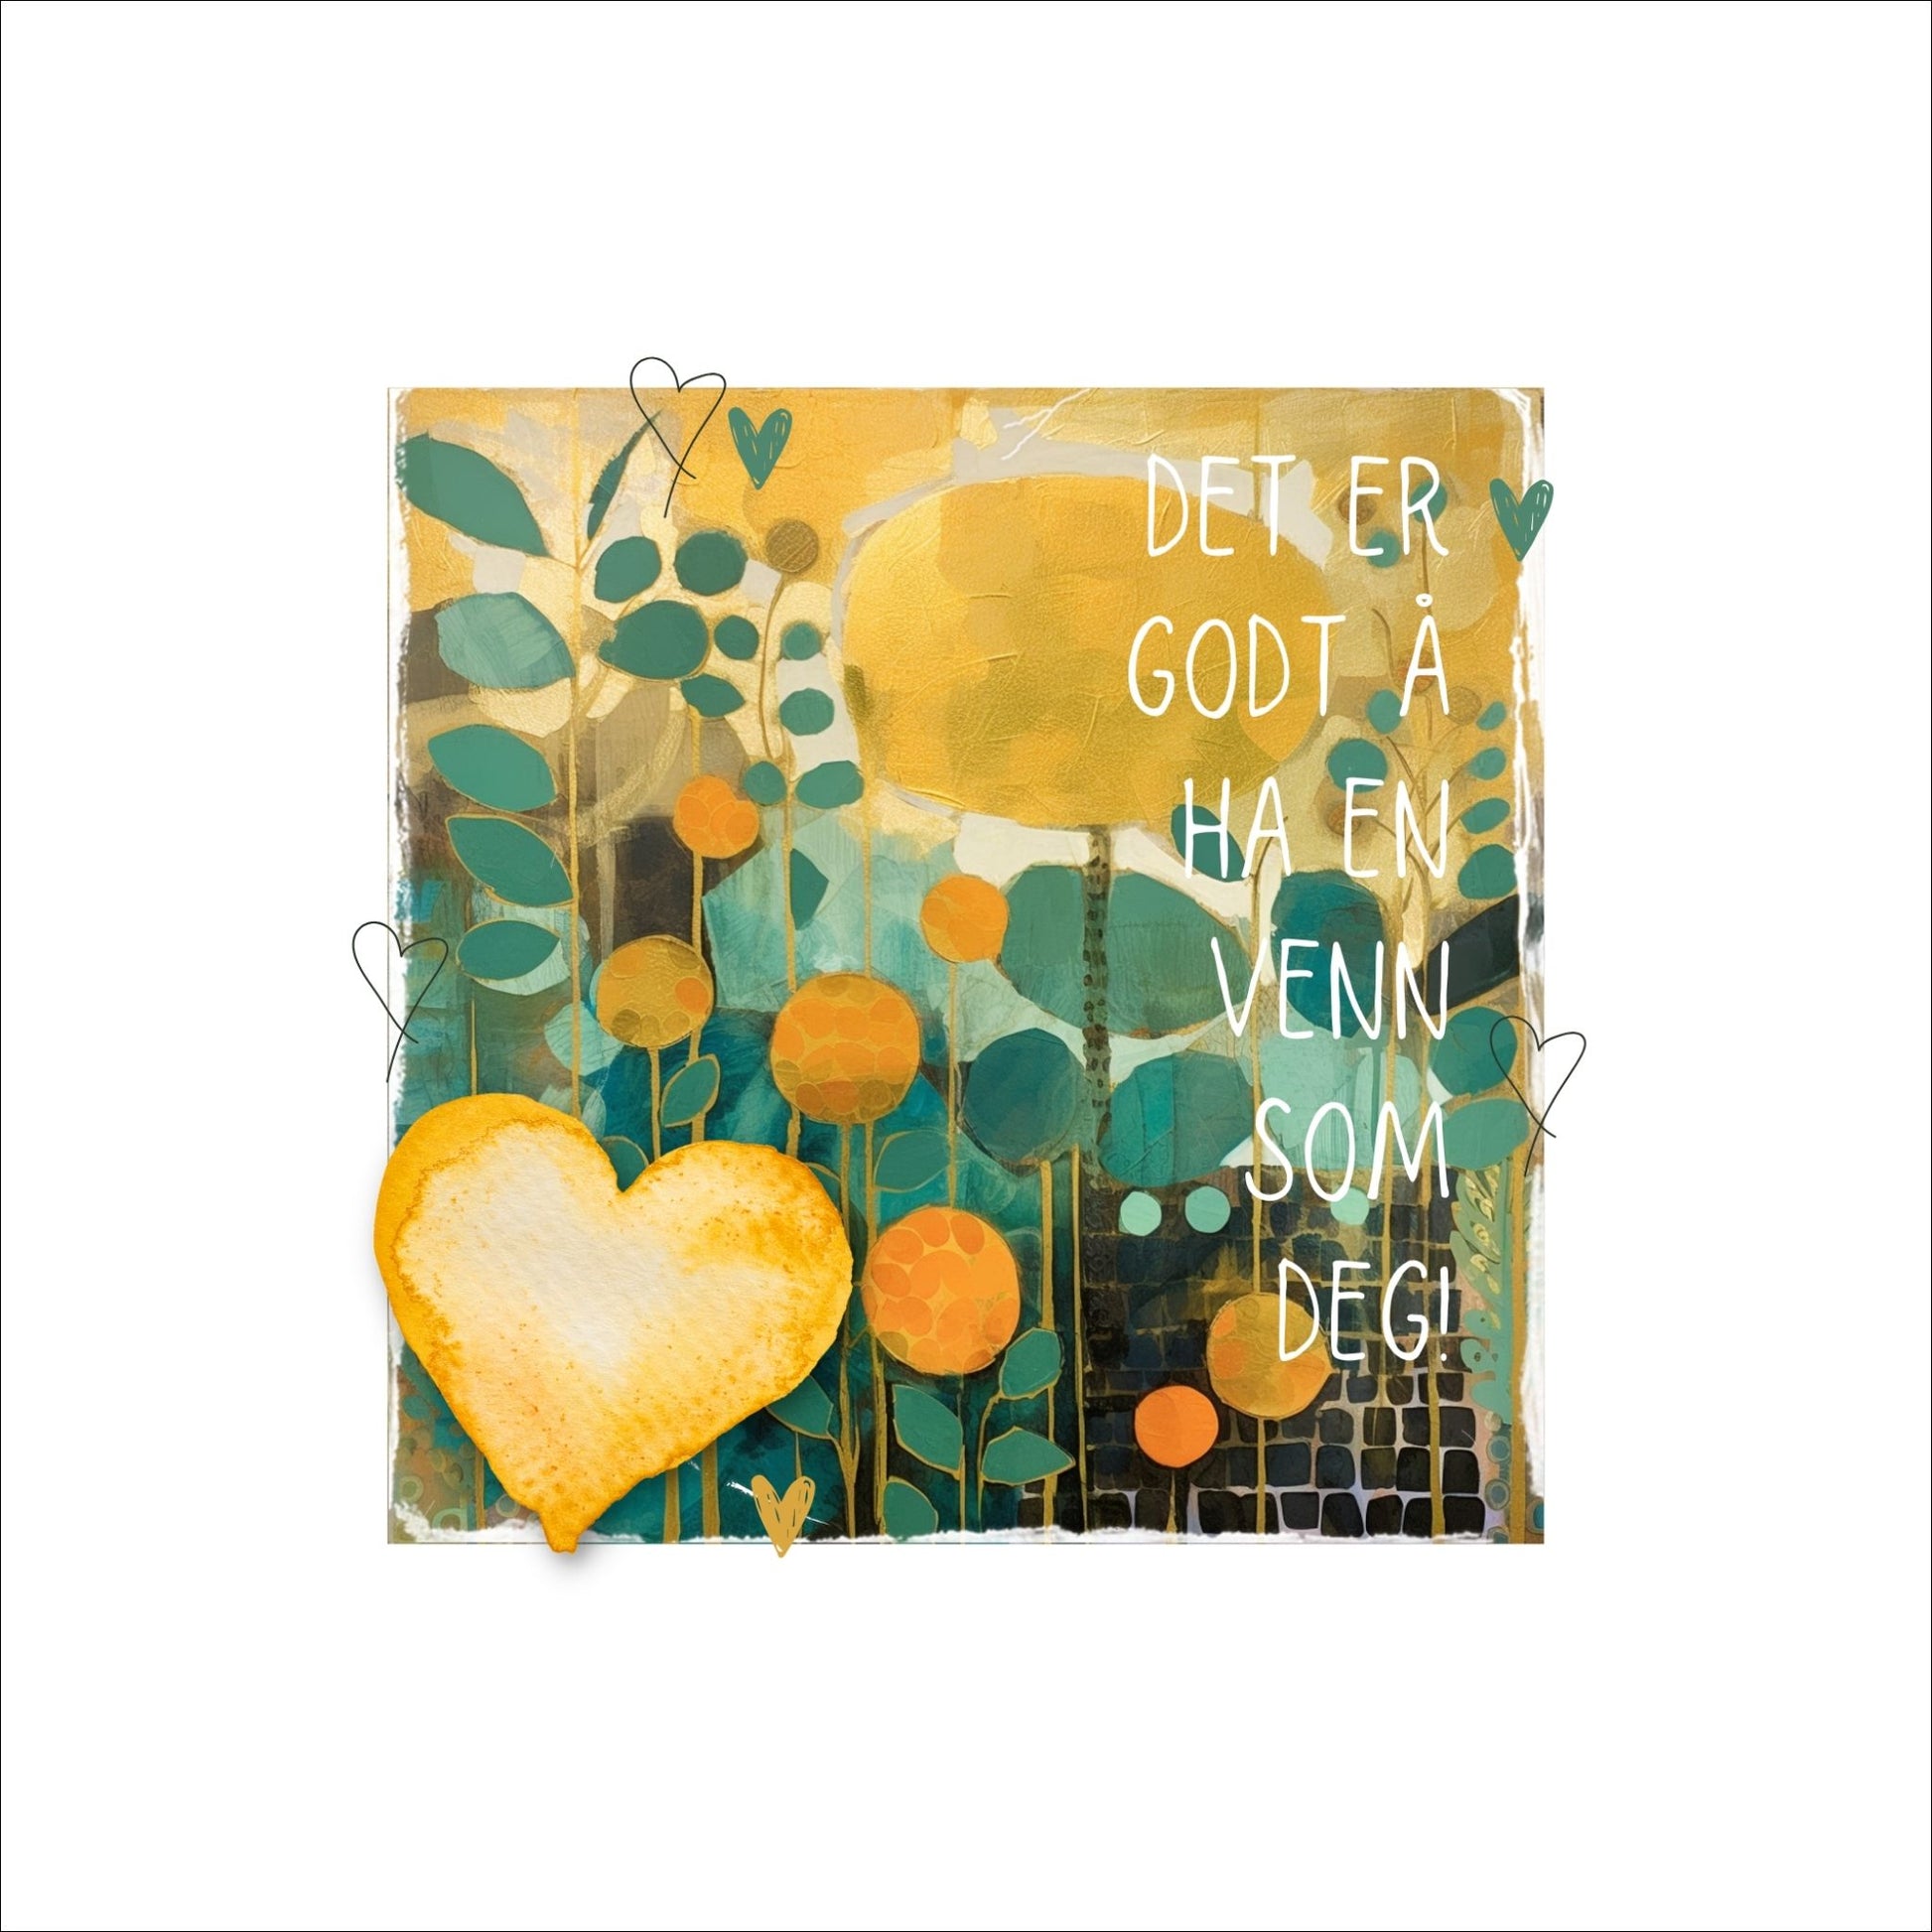 Plakat med lysegult hjerte og tekst "Det er godt å ha en venn som deg" - og et motiv med farger i grønn, gul og oransje. Med hvit kant på 4 cm. 